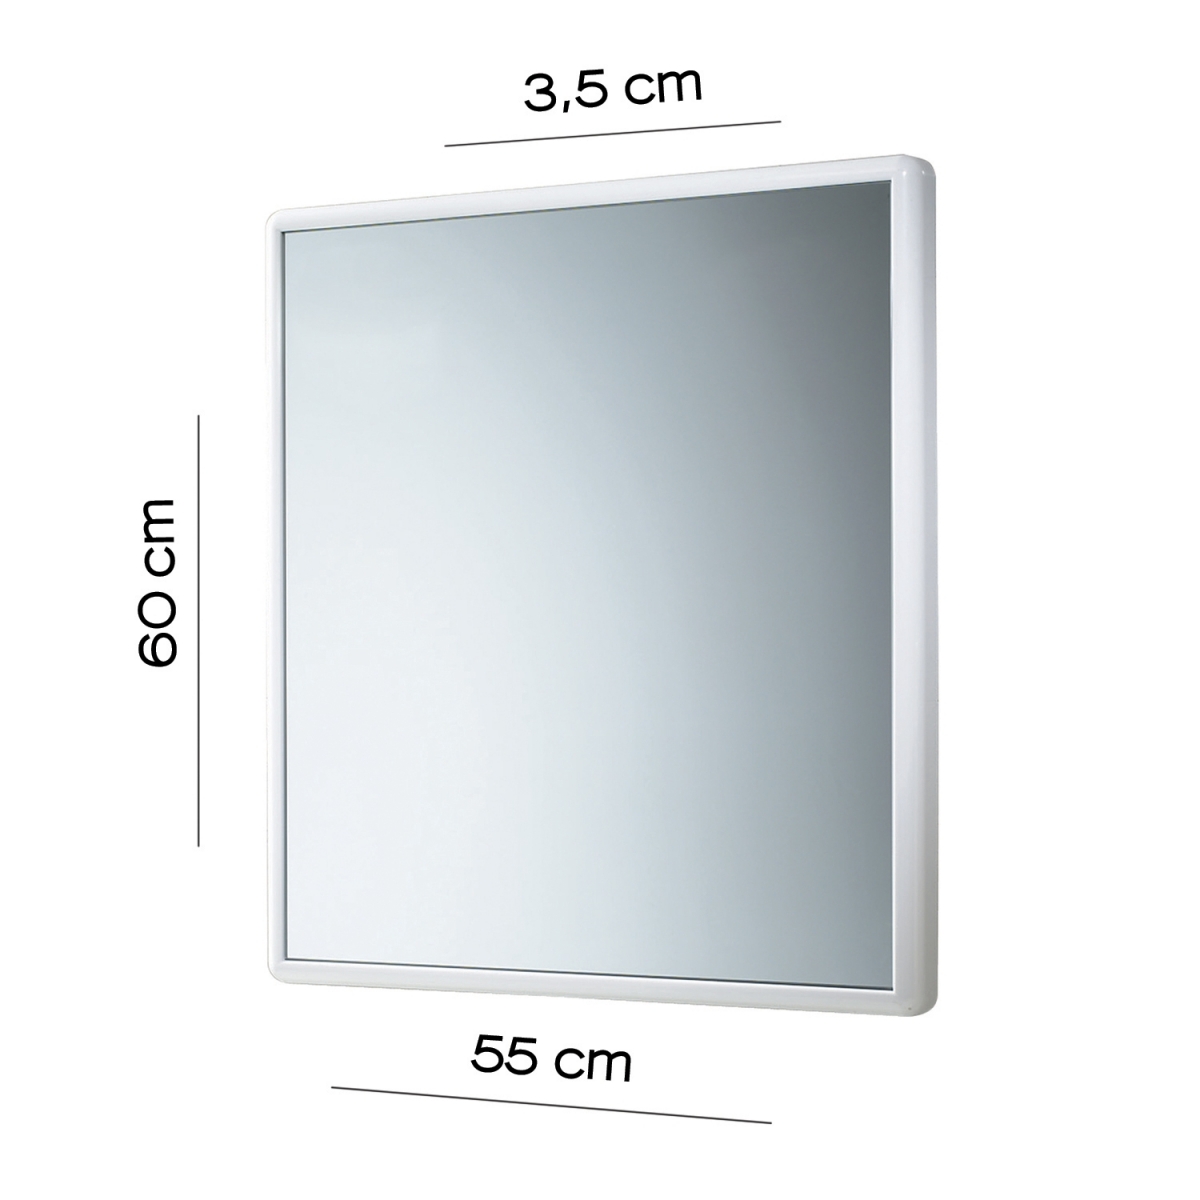 Fotos de ambiente do Espelho Junior 55X60 Cm com moldura branca [50564].